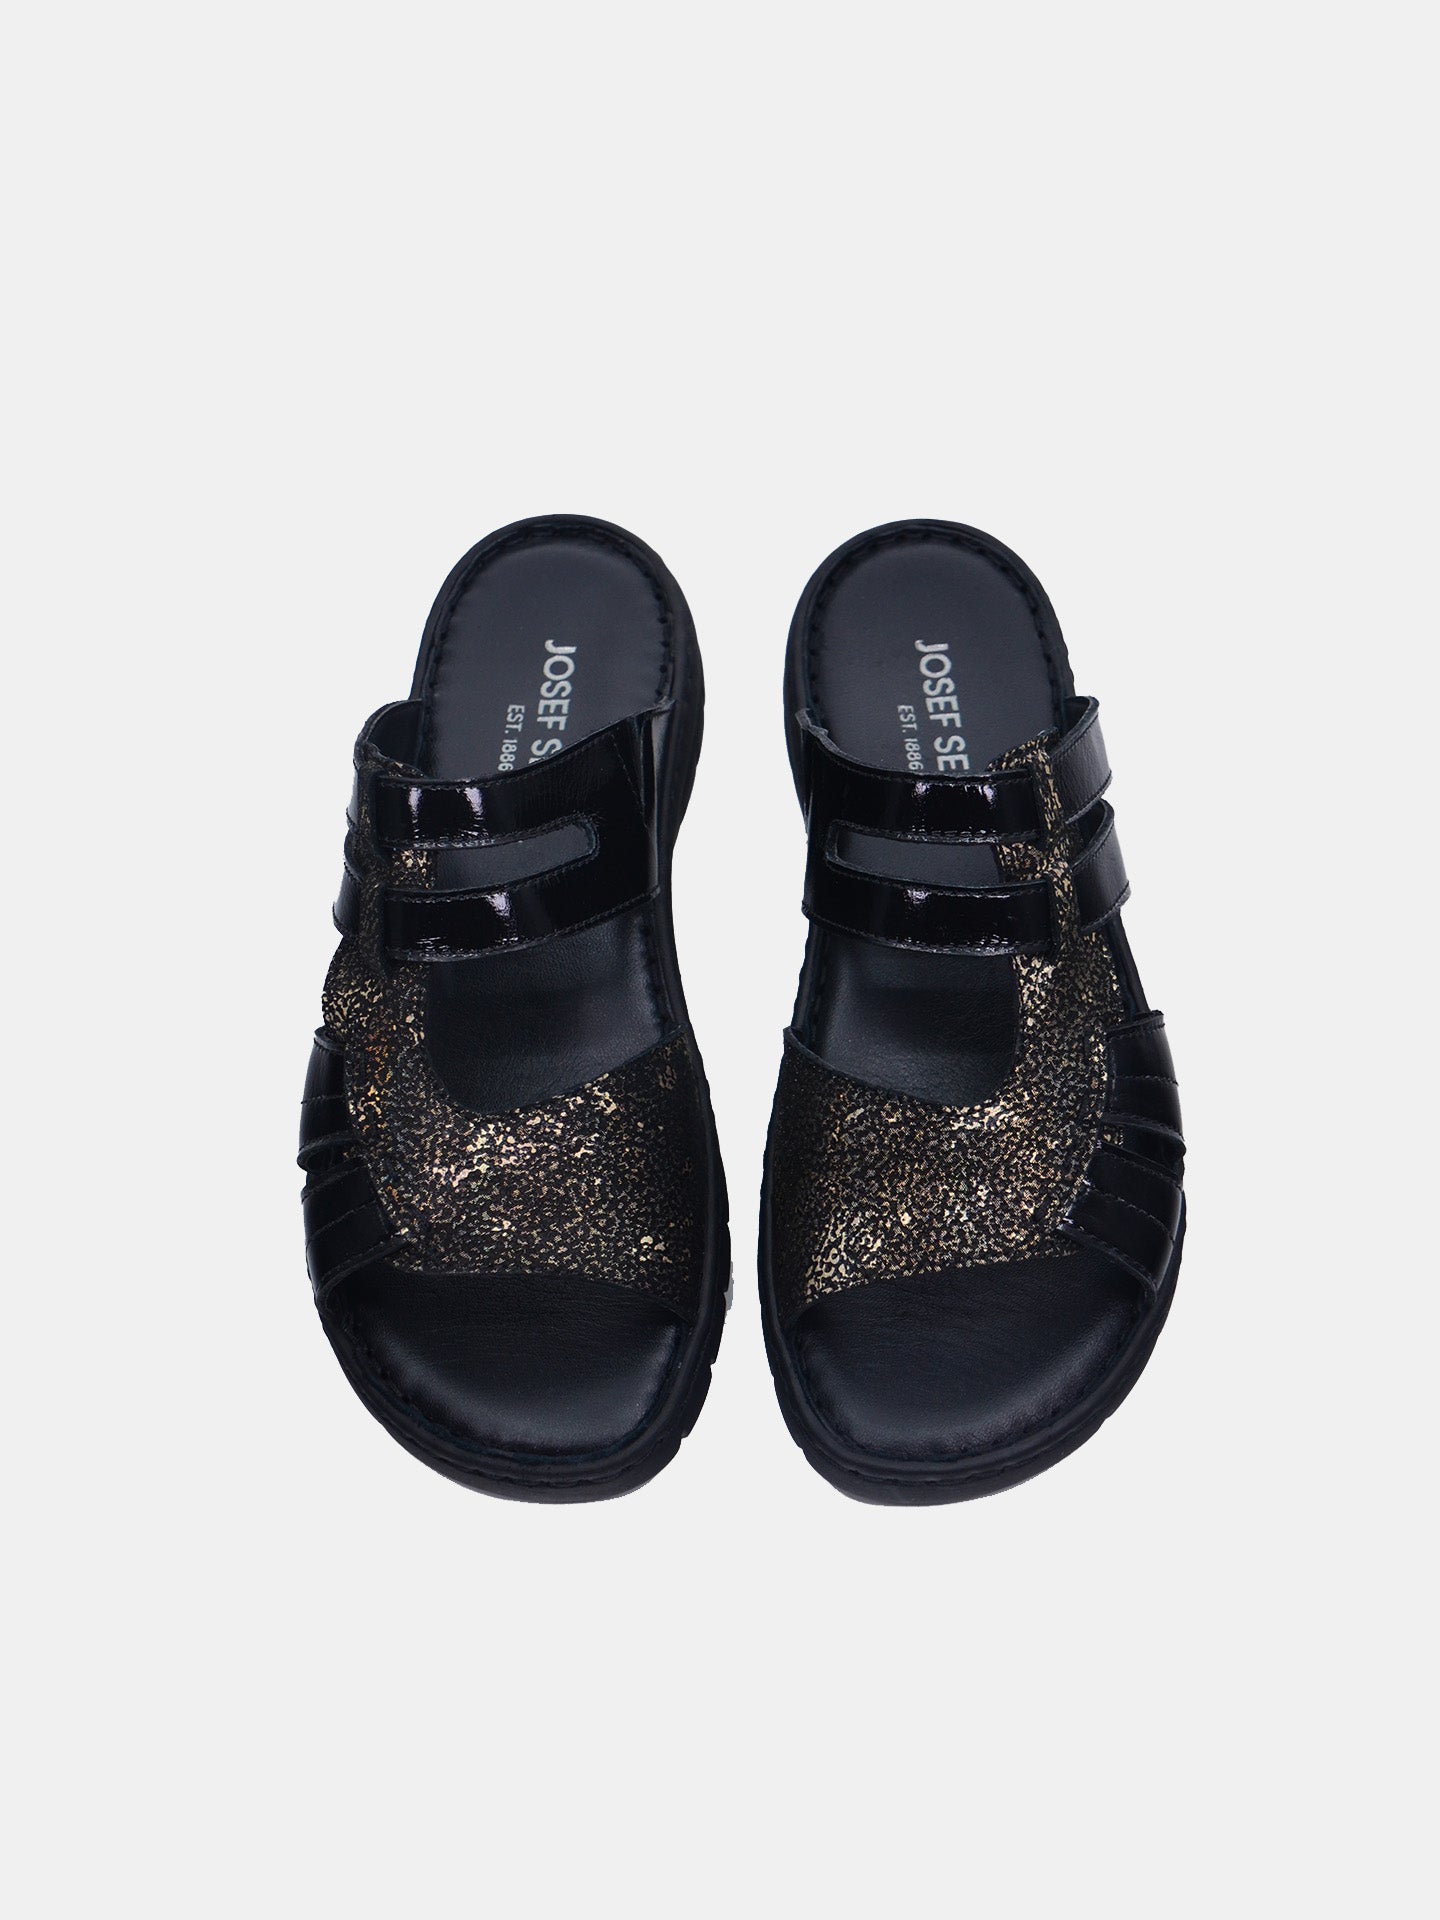 Josef Seibel 93435AR Women's Slider Sandals #color_Black